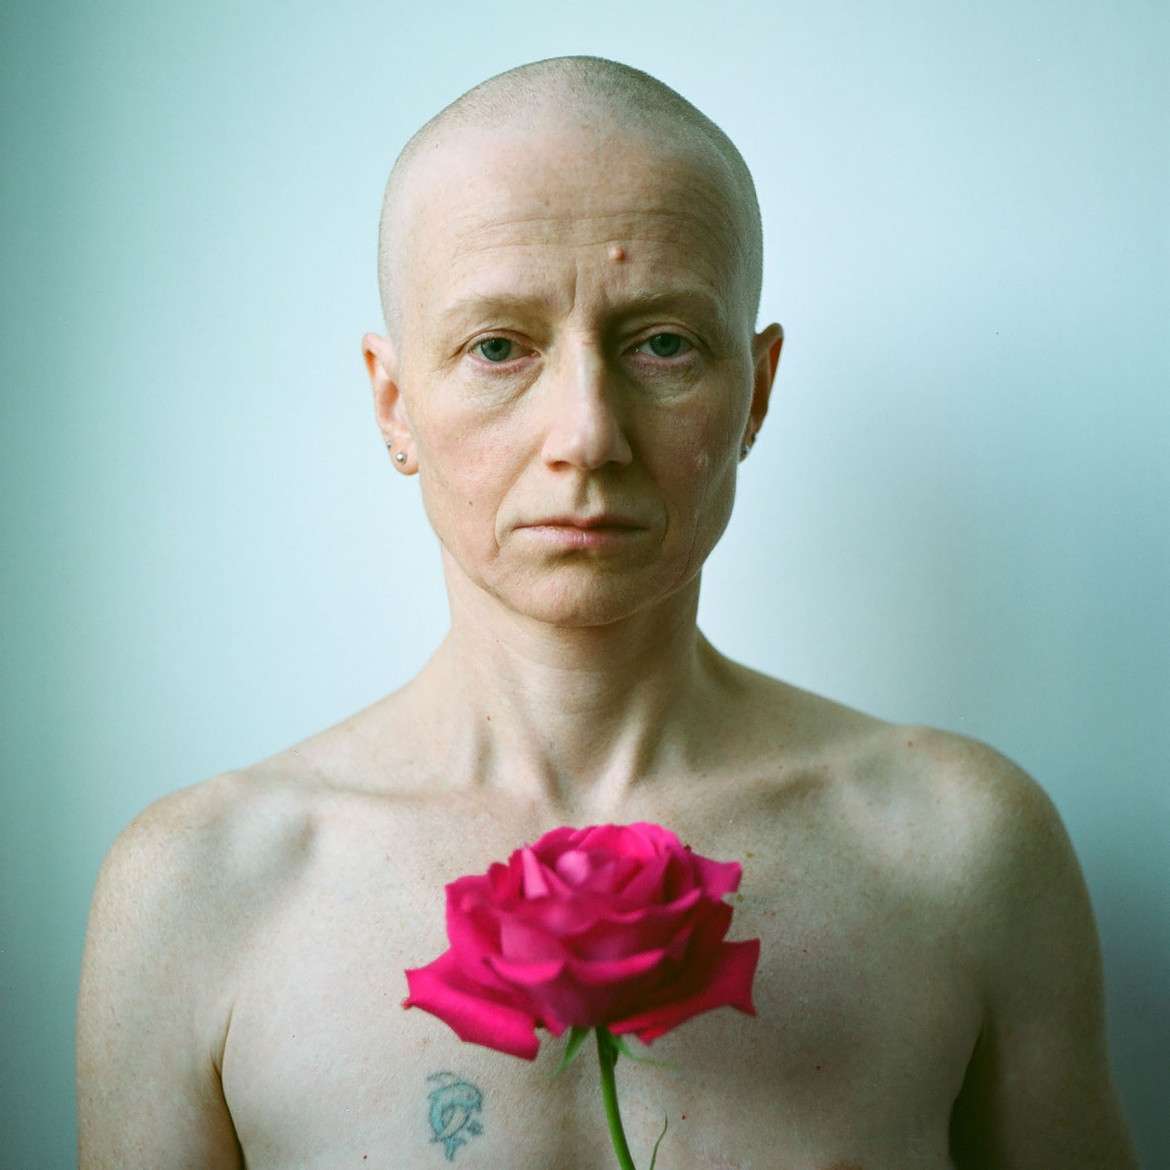 fot. Katrzyna Długosz, z serii "My Pathway to Health", 2. miejsce w amatorskiej kat. Portraiture / Px3 Prix de la Photographie, Paris